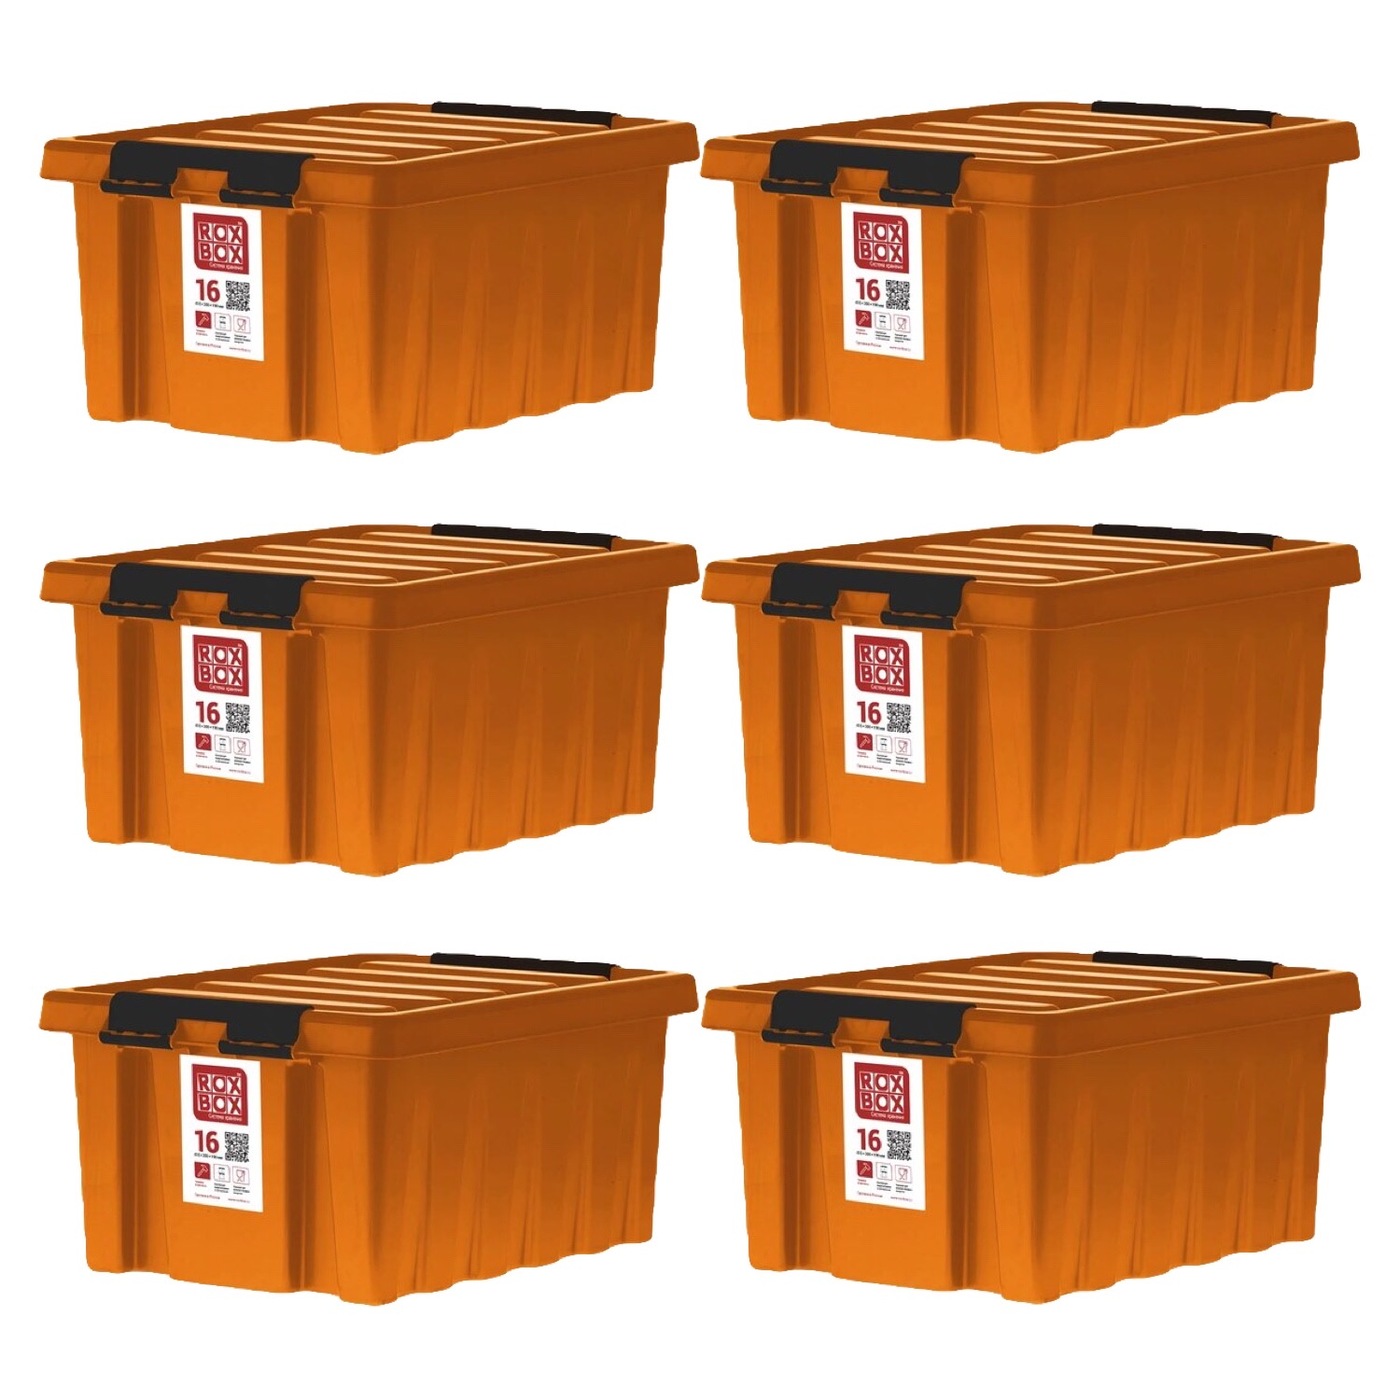 Rox box 120. Rox Box контейнеры 70 литров. ROXBOX 16л контейнер. Контейнер Rox Box 16 л. Ящик ROXBOX 16л.